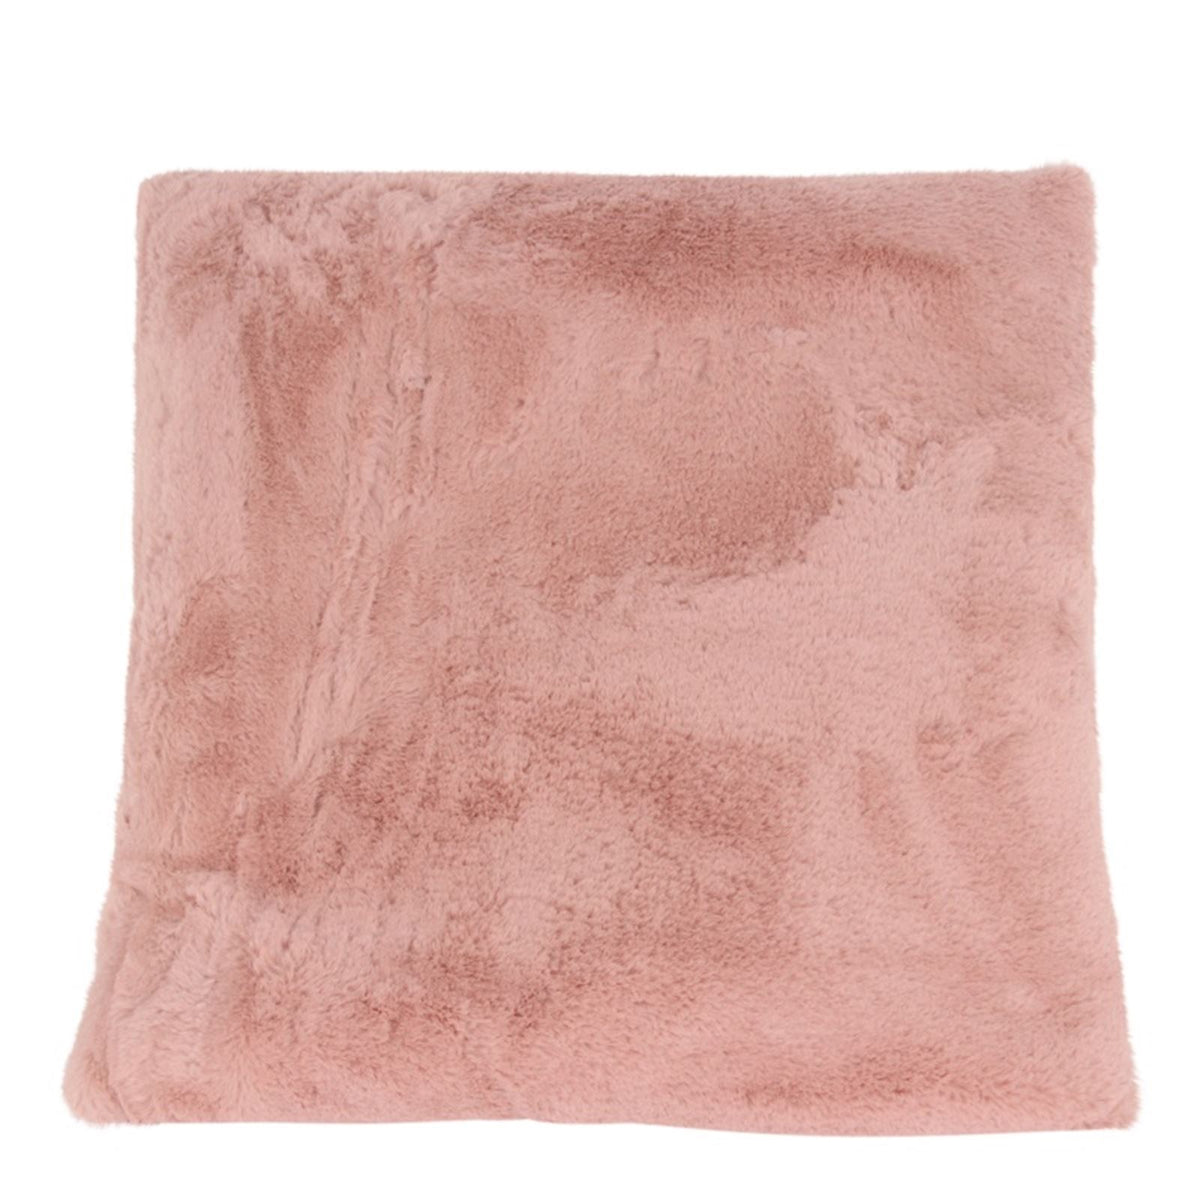 Fur pillow pink 45x45cm